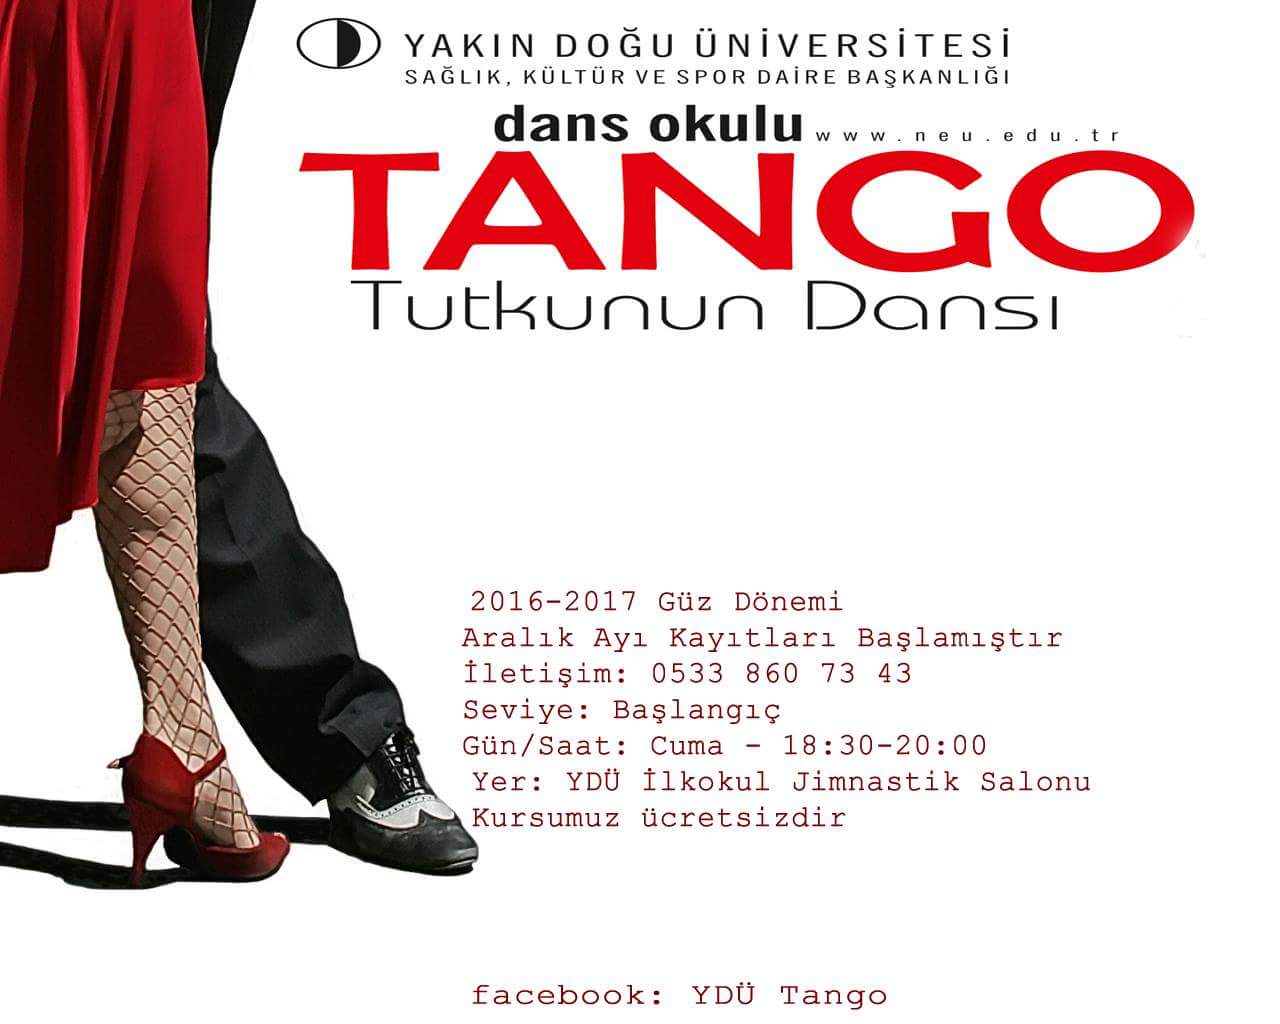 YDÜ Sağlık, Kültür ve Spor Daire Başkanlığı’na Bağlı Tango Kulübünün Aralık Ayı Kayıtları  Başlamıştır